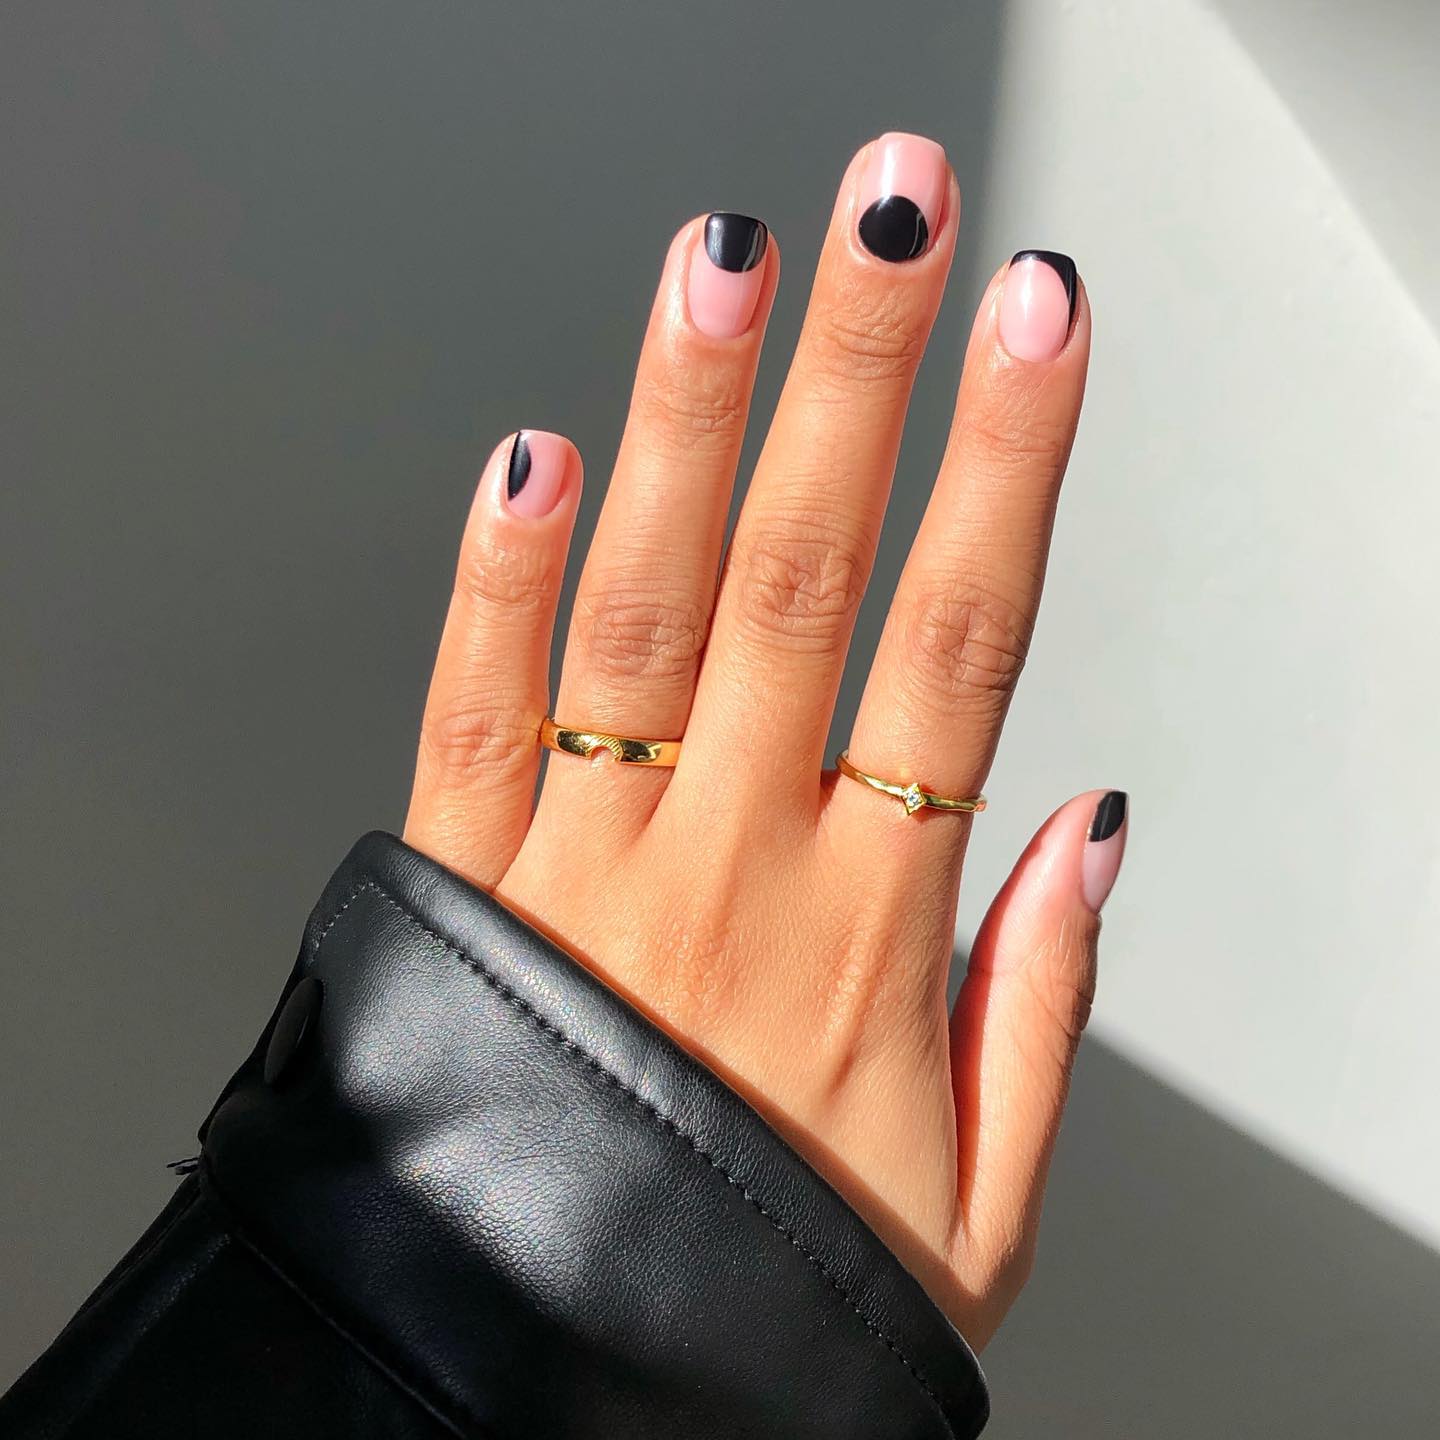 diseños de uñas negras cortas: elegantes y sofisticadas